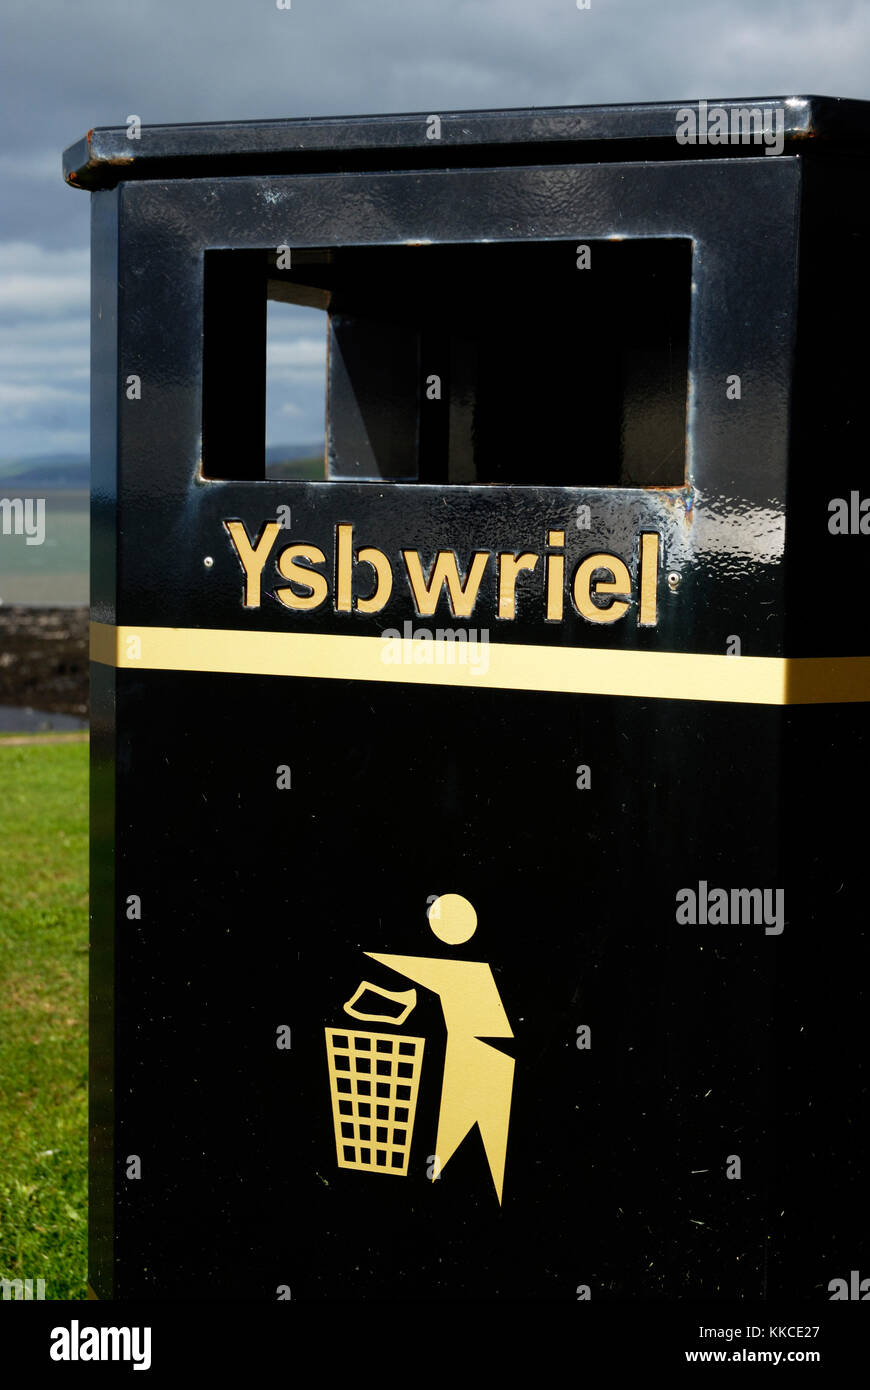 Eine öffentliche Abfallbehälter in Wales mit Text, ysbwriel (Abfall) in die Walisische Sprache, Wales, Großbritannien Stockfoto